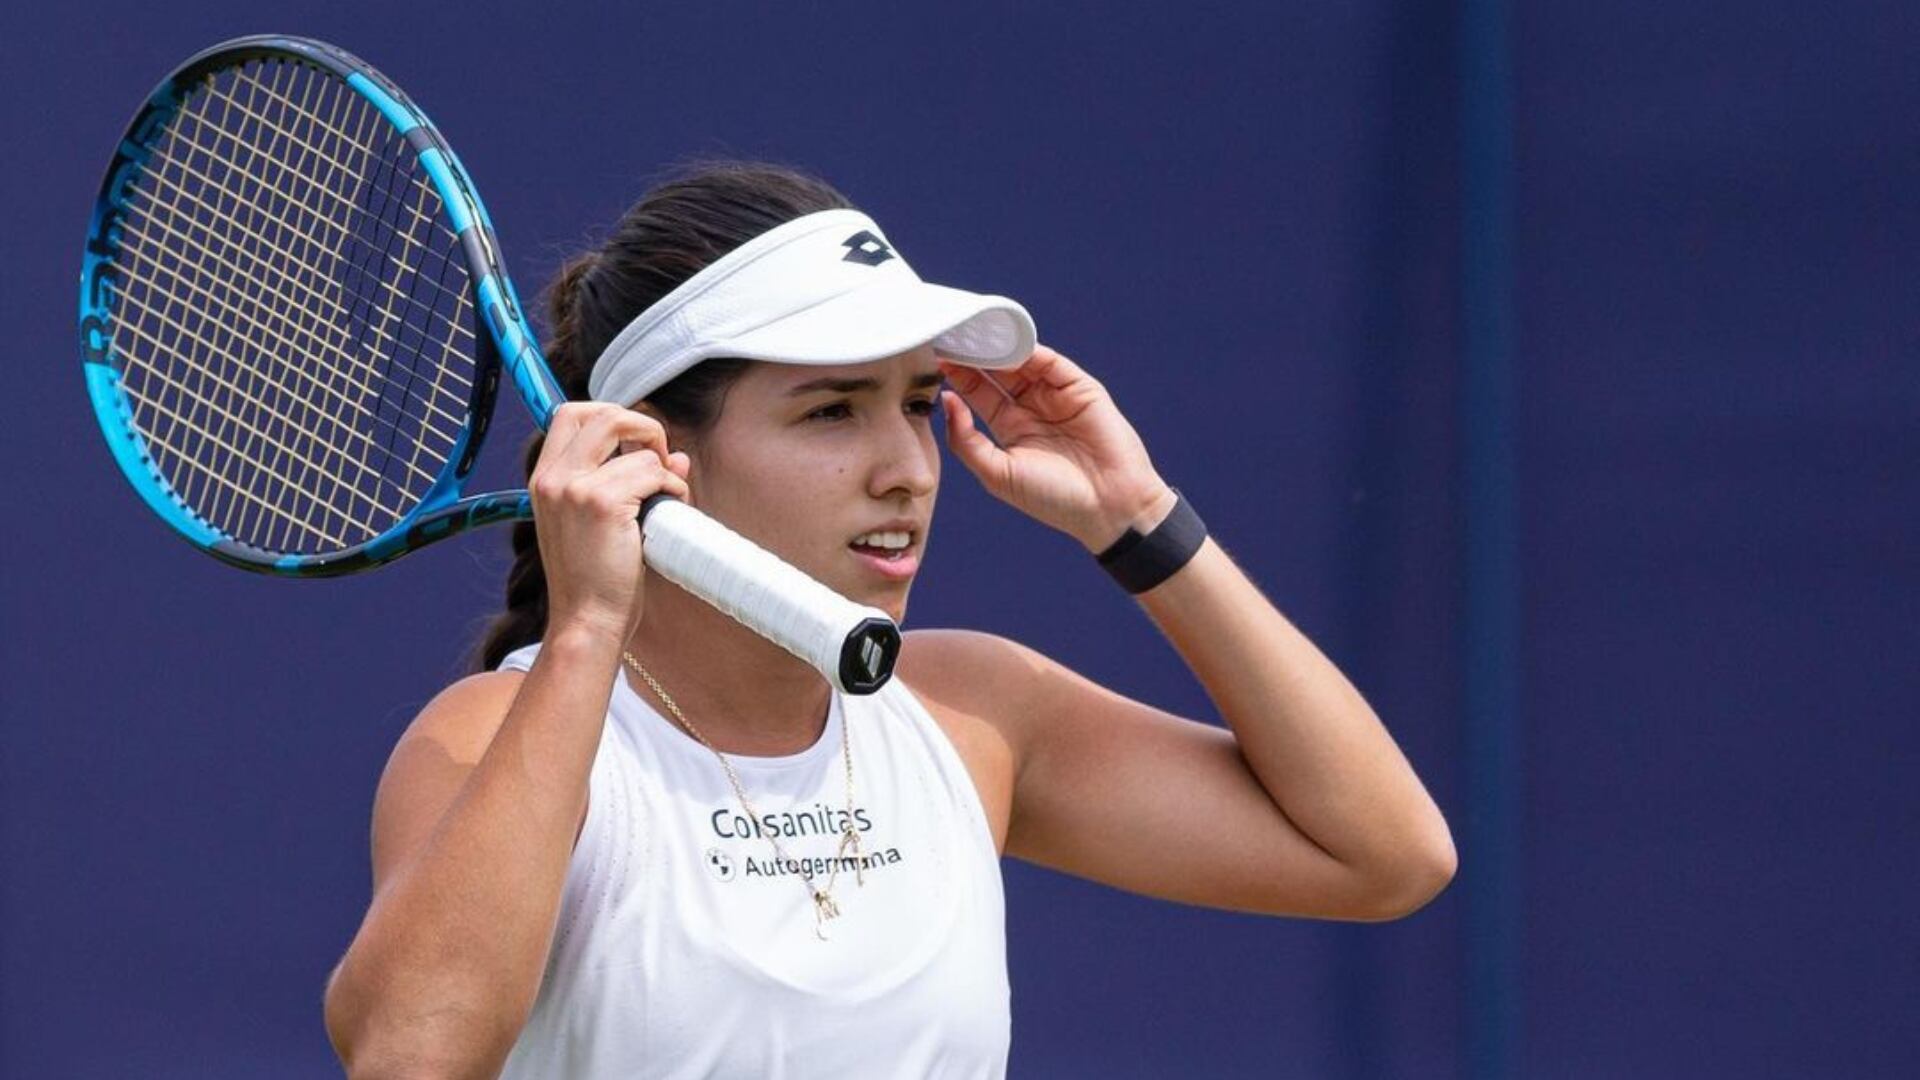 La tenista colombiana María Camila Osorio fue eliminada en primera ronda de Wimbledon. Luke Mayes.